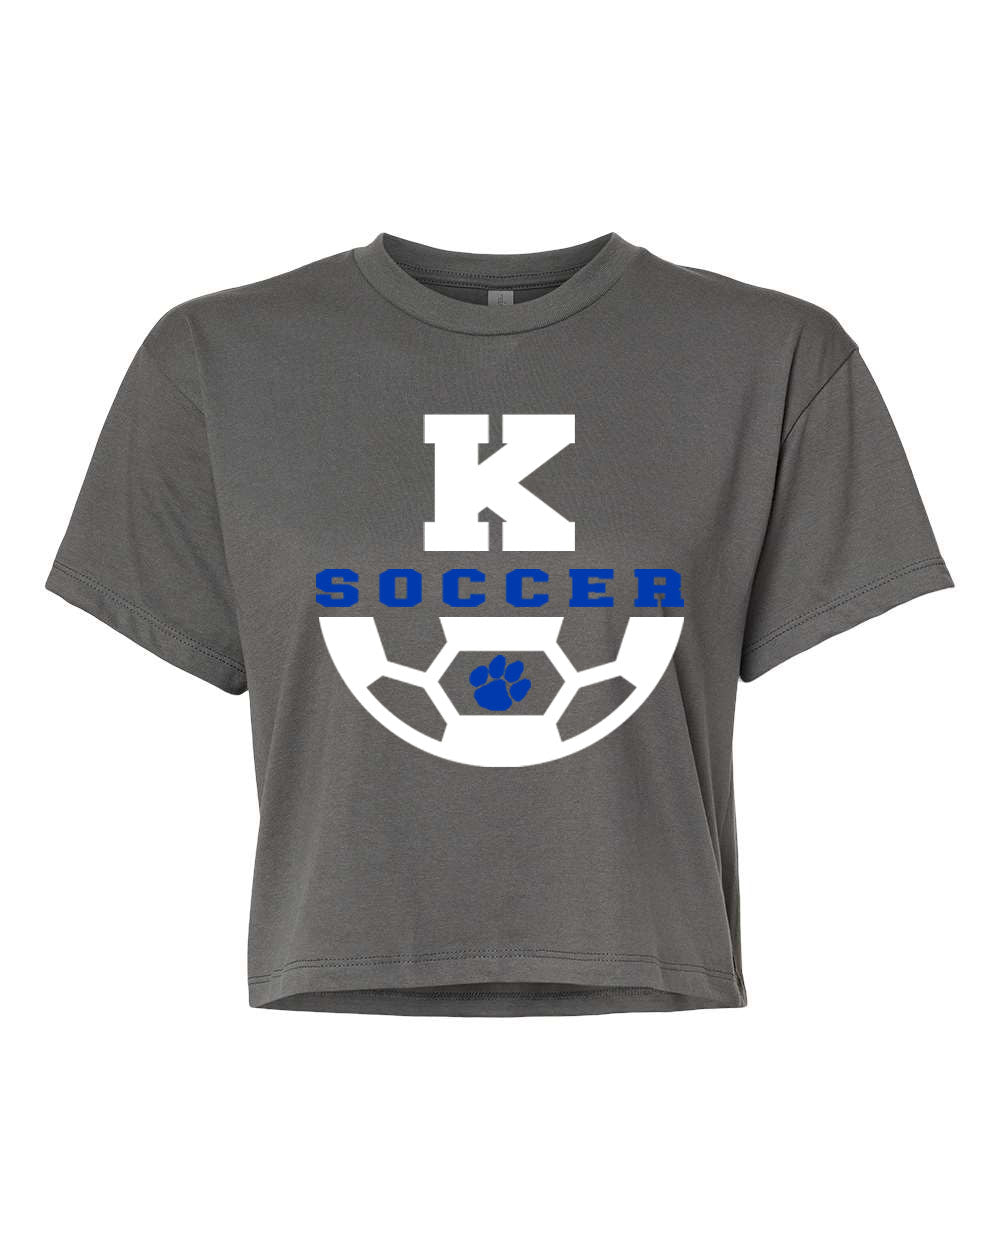 Kittatinny Soccer Design 4 Crop Top